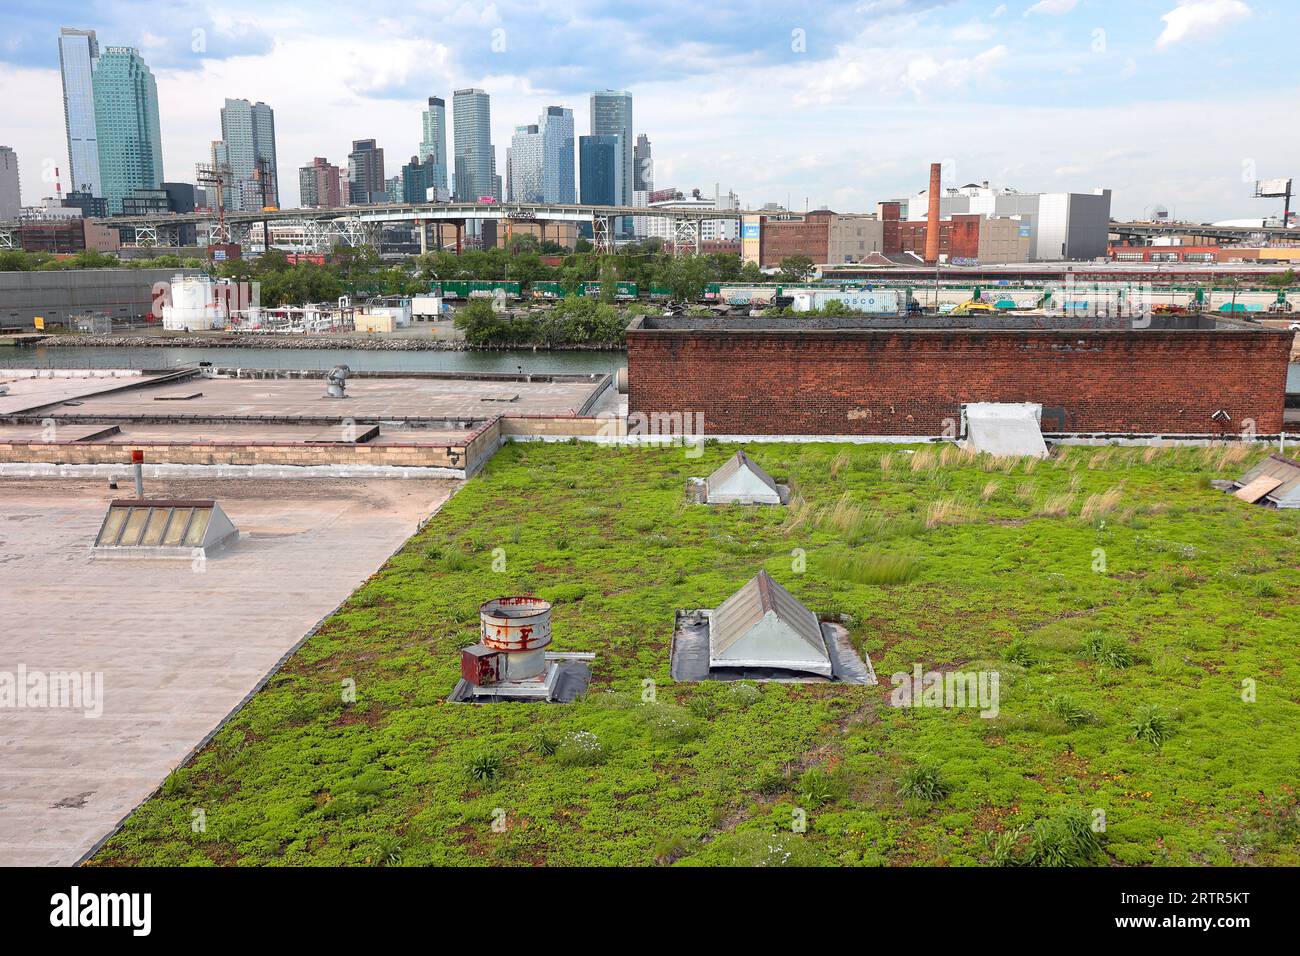 Un toit vert sur un bâtiment à Greenpoint, Brooklyn, regardant vers le nord en direction de long Island City. Les toits verts aident à réduire l'effet des îlots de chaleur urbains sur les villes. Banque D'Images